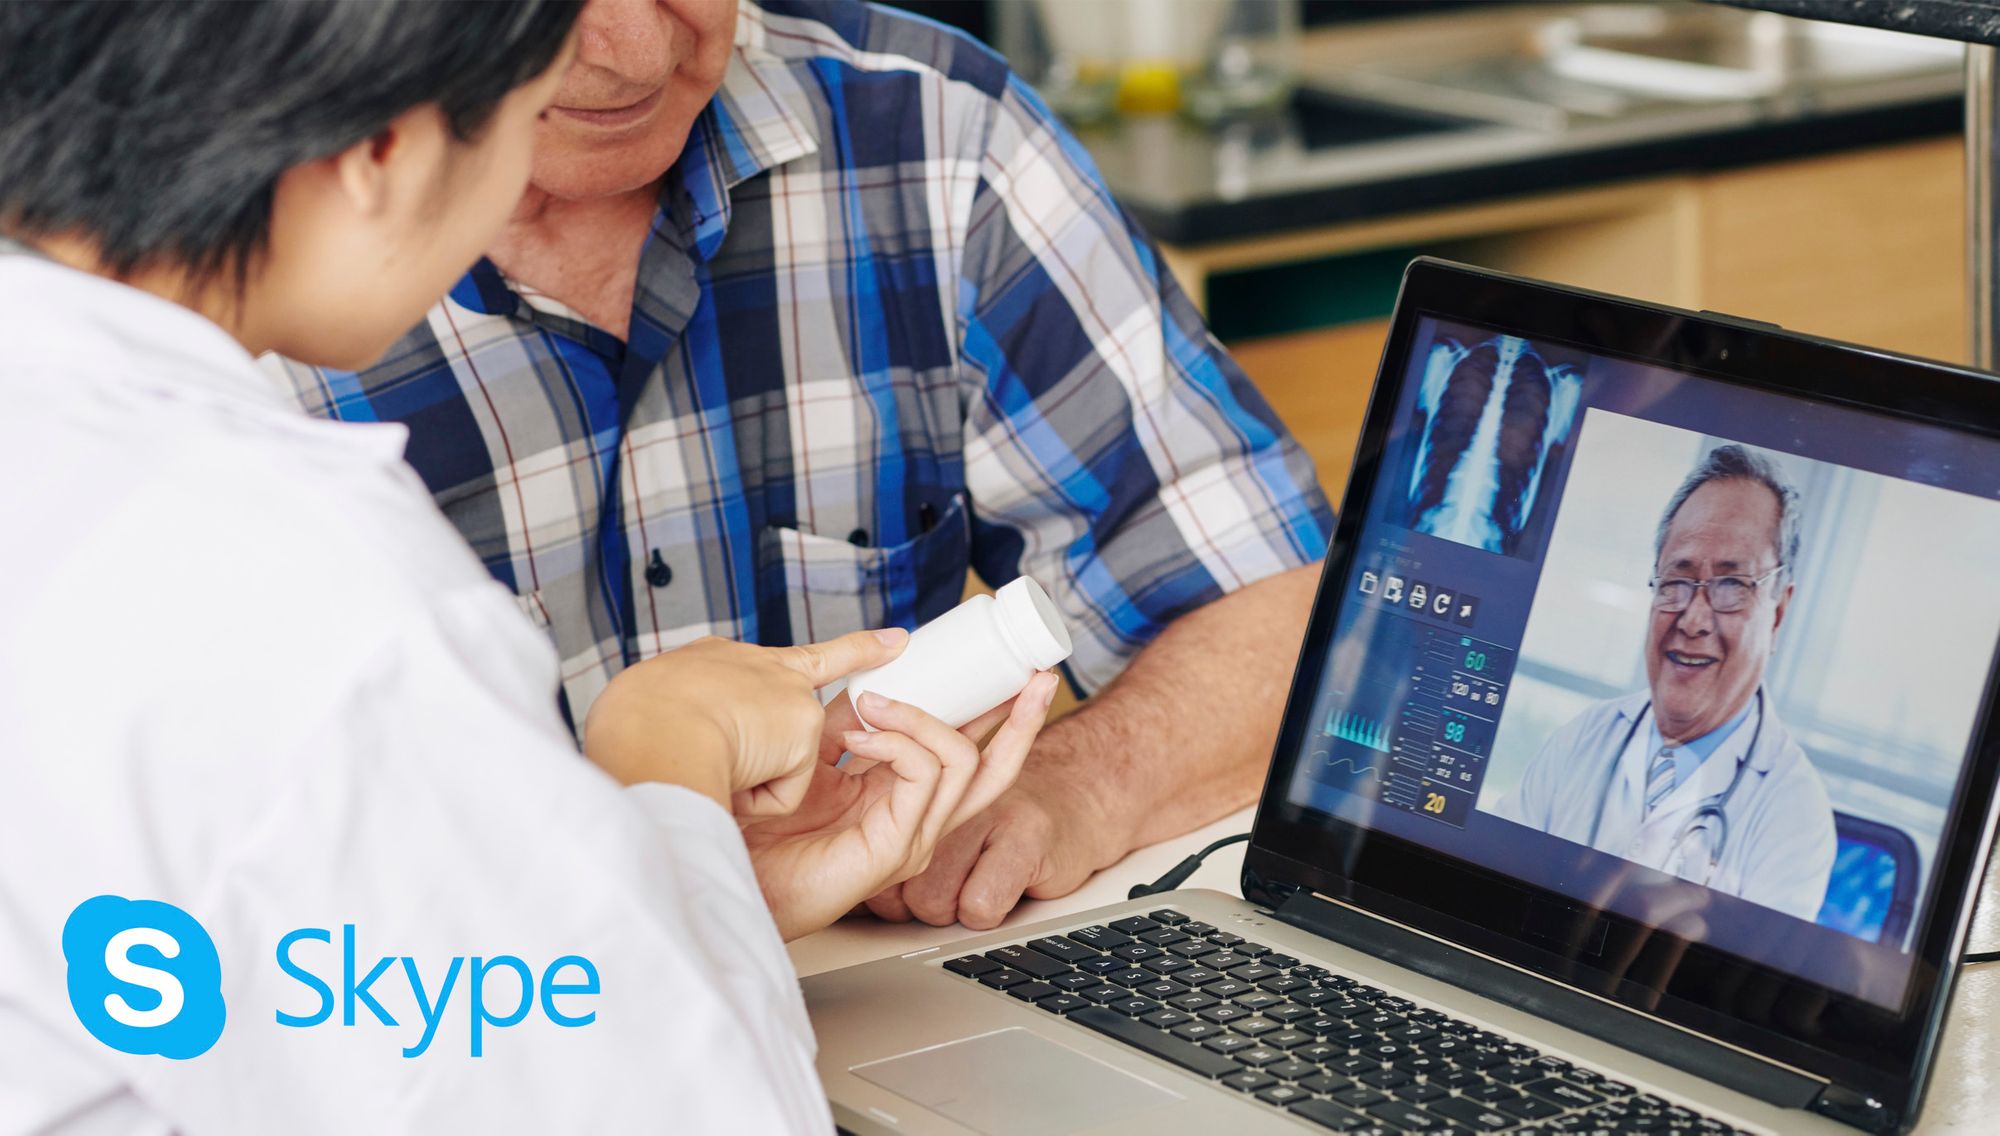 COVID-19: habilitamos video conferencia por Skype con pacientes